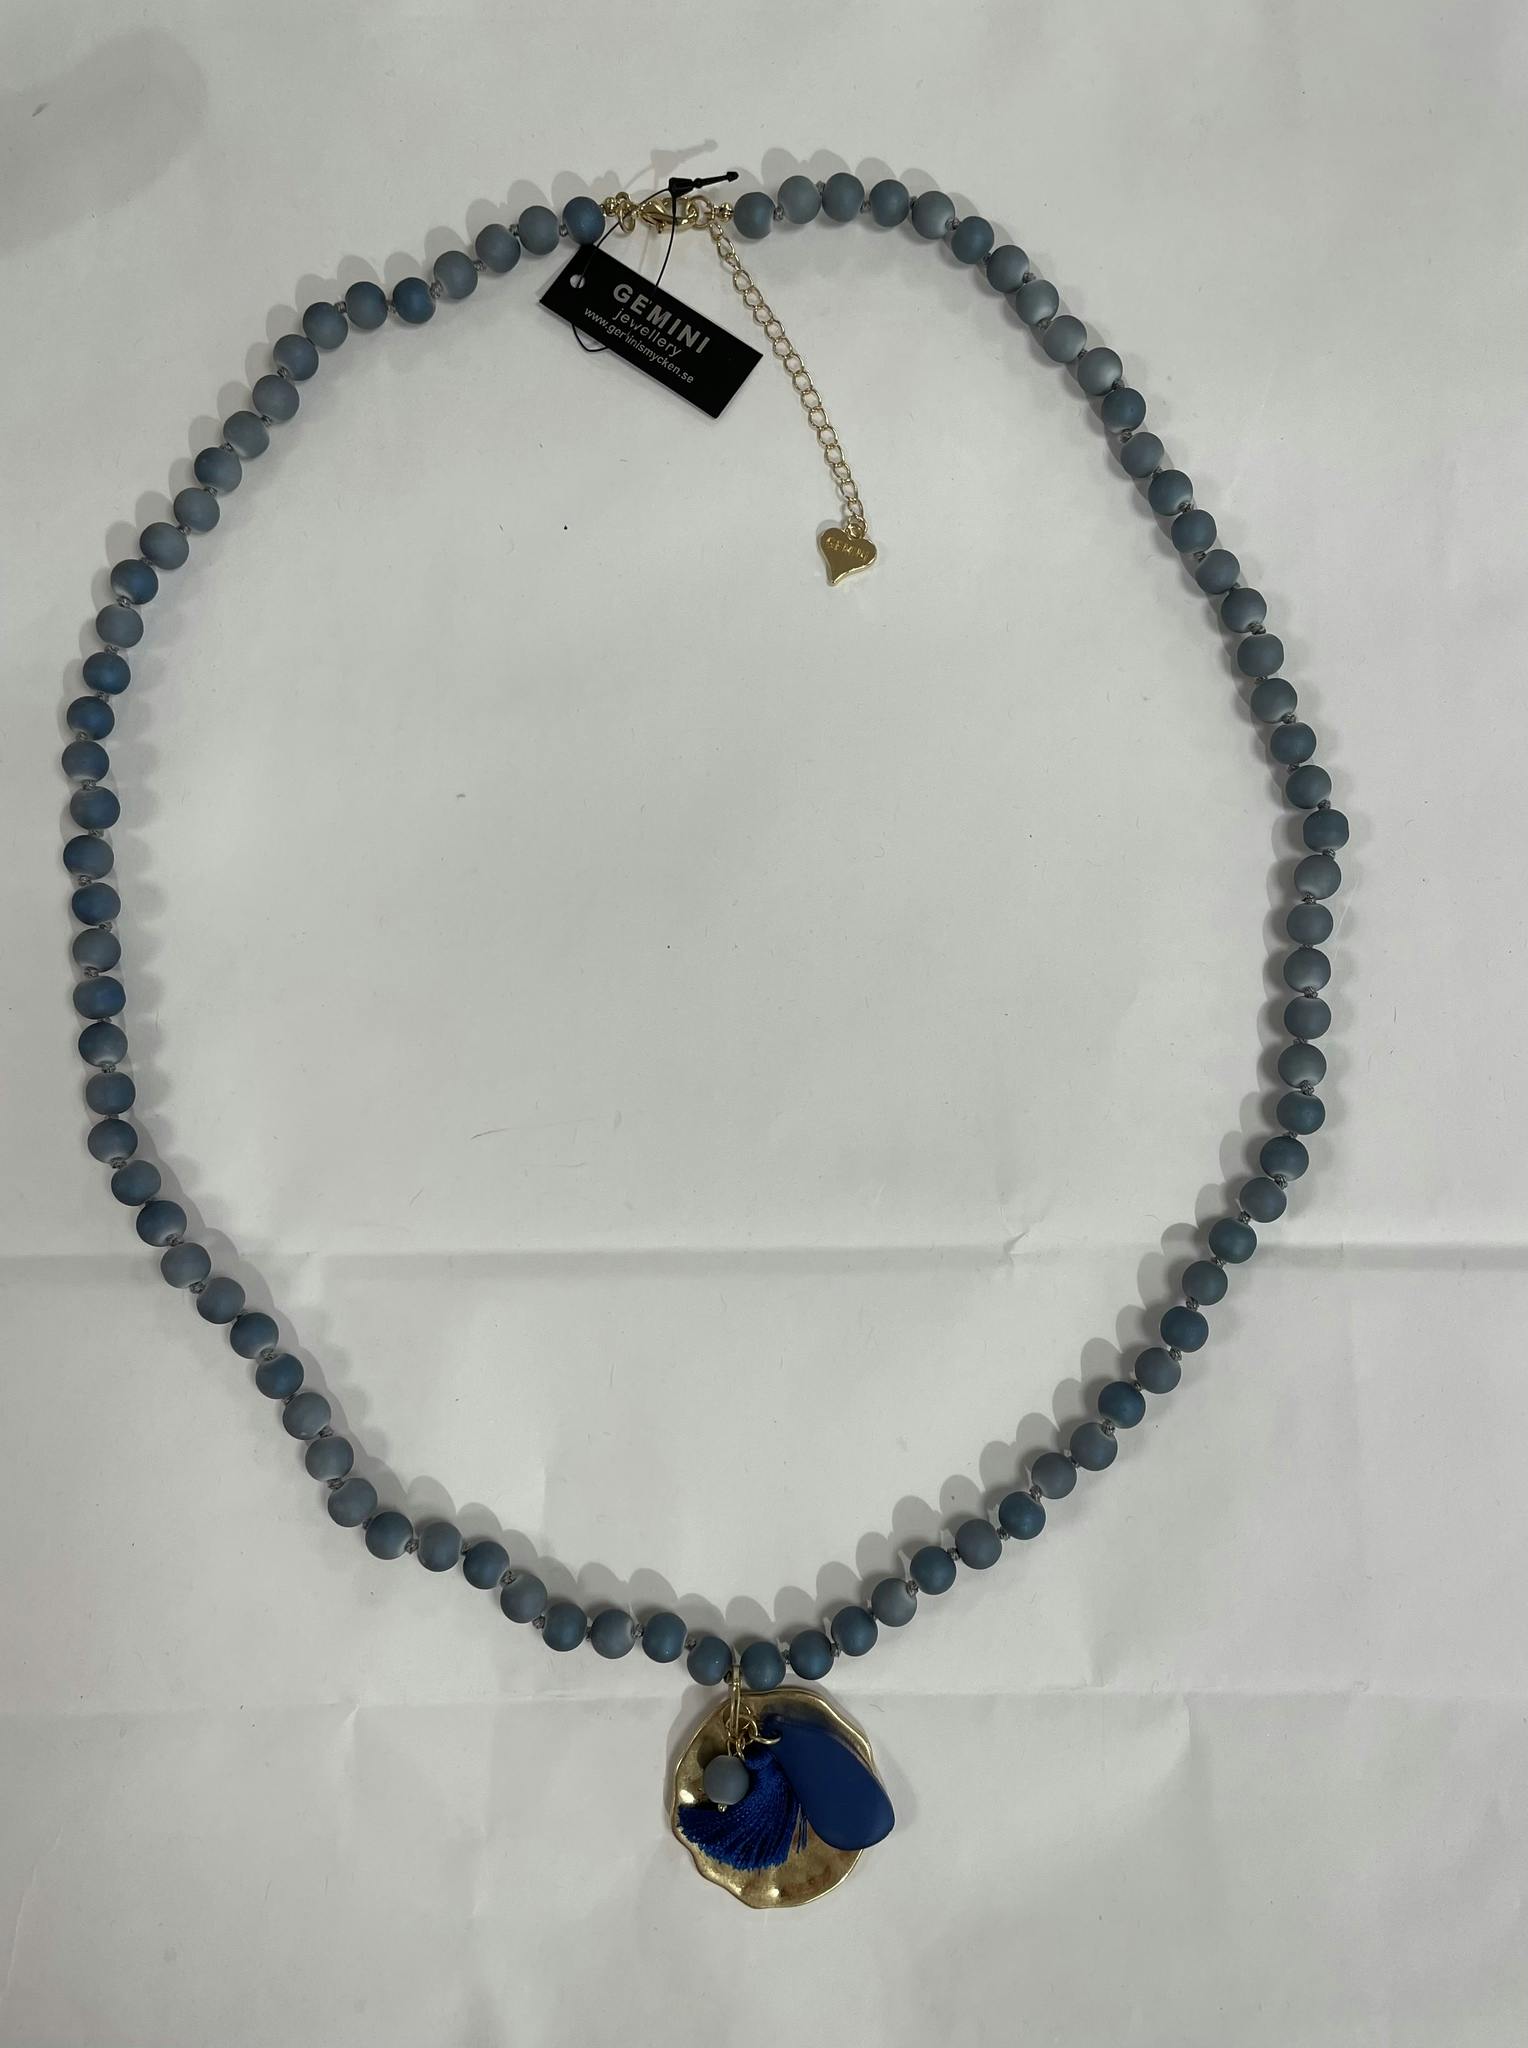 Långt halsband i jeansblå färg